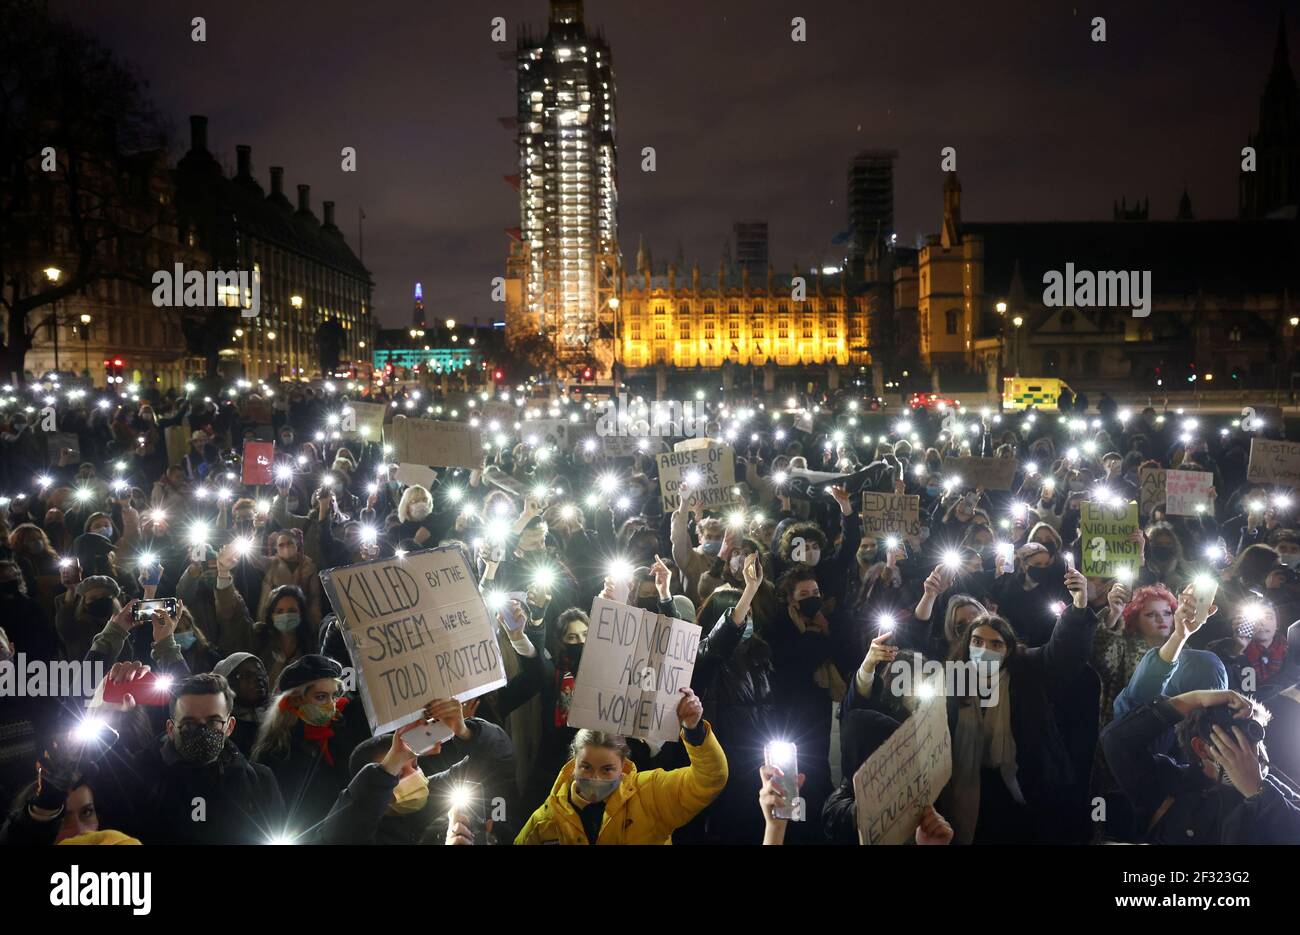 Les gens éclairent les lumières de leur téléphone mobile lorsqu'ils assistent à une manifestation sur la place du Parlement, à la suite de l'enlèvement et du meurtre de Sarah Everard, à Londres, en Grande-Bretagne, le 14 mars 2021. REUTERS/Henry Nicholls Banque D'Images